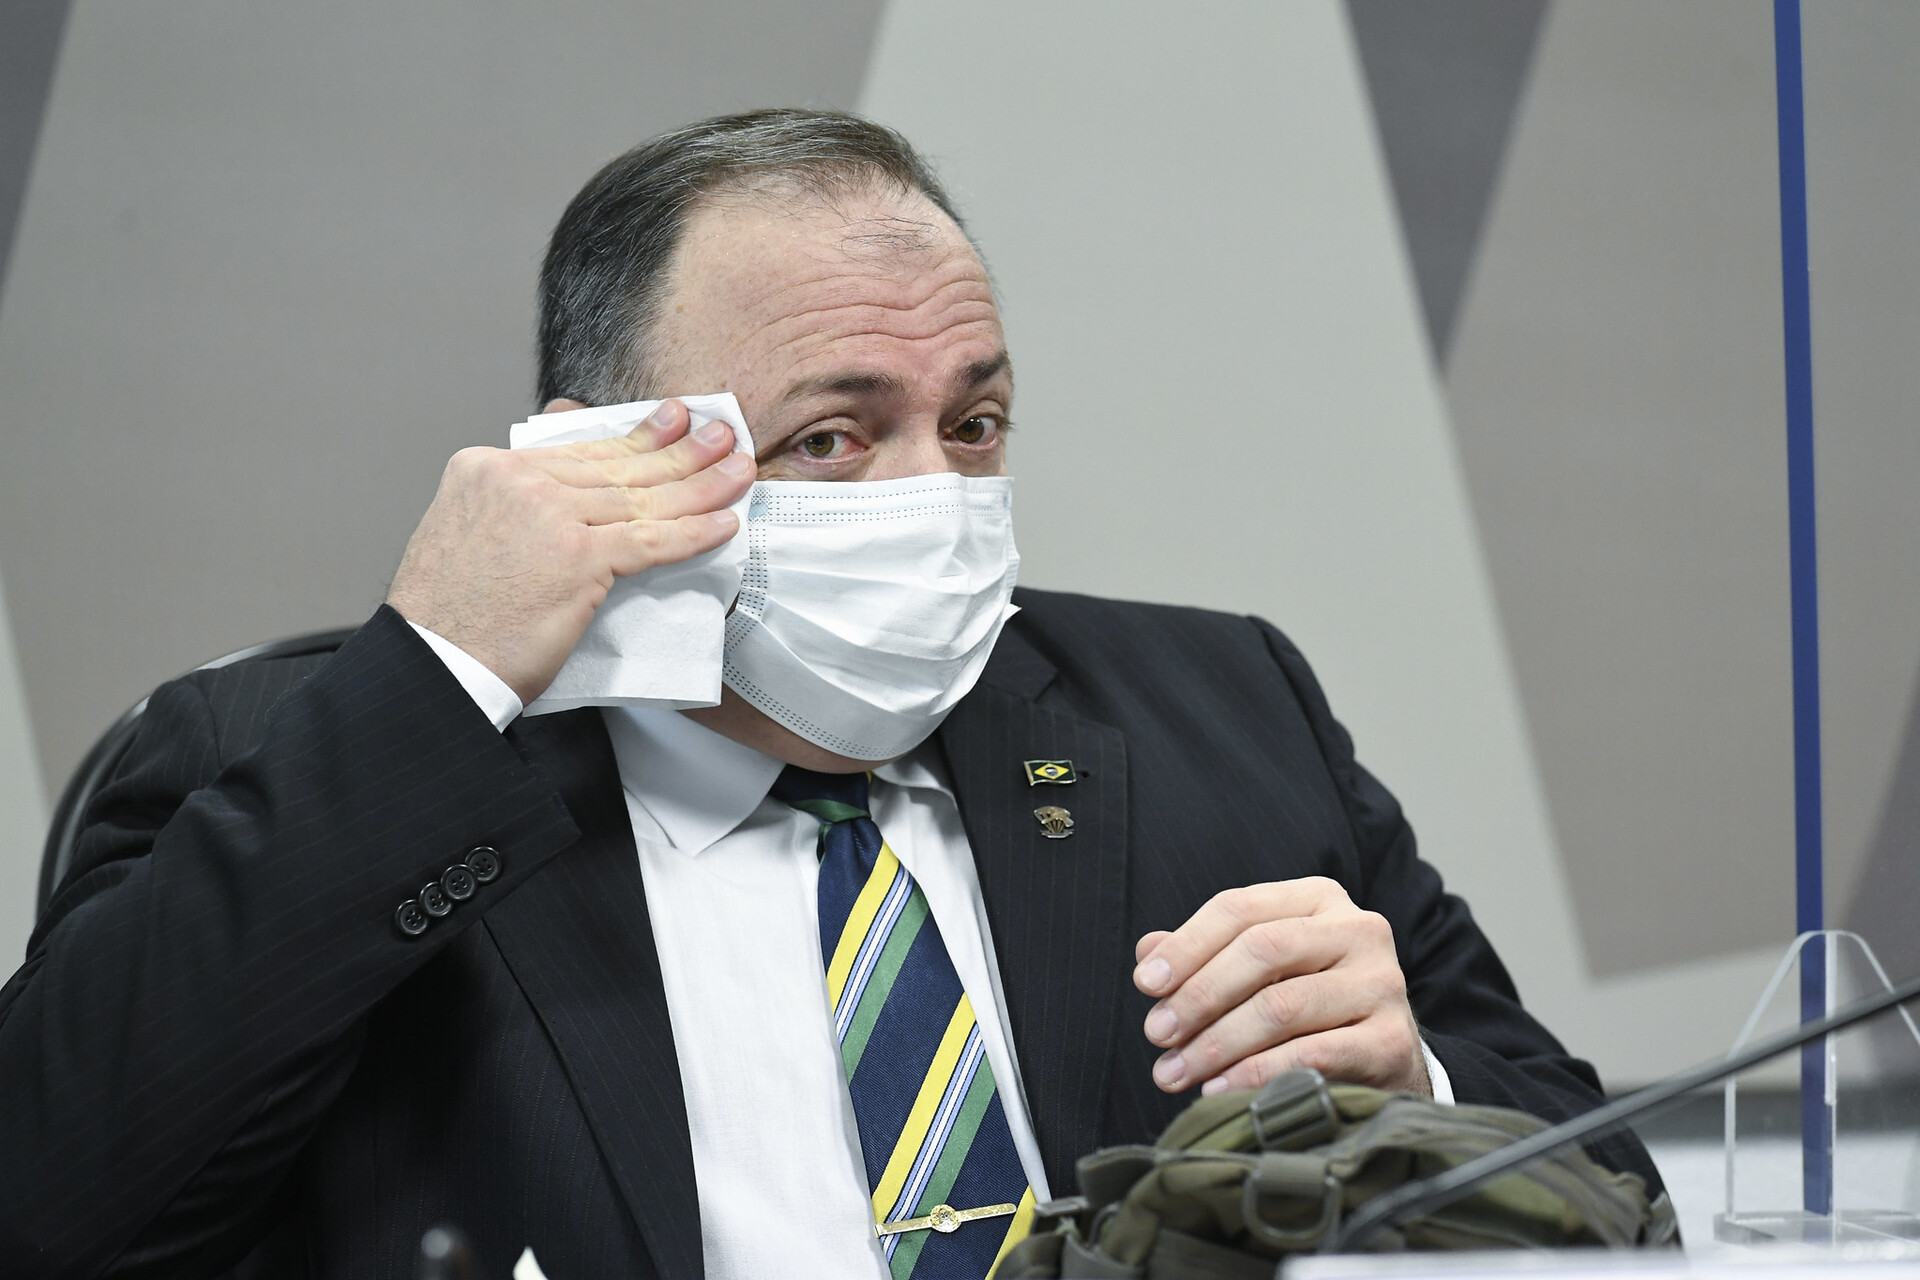  Pazuello isenta Bolsonaro e culpa CFM pelo uso da cloroquina